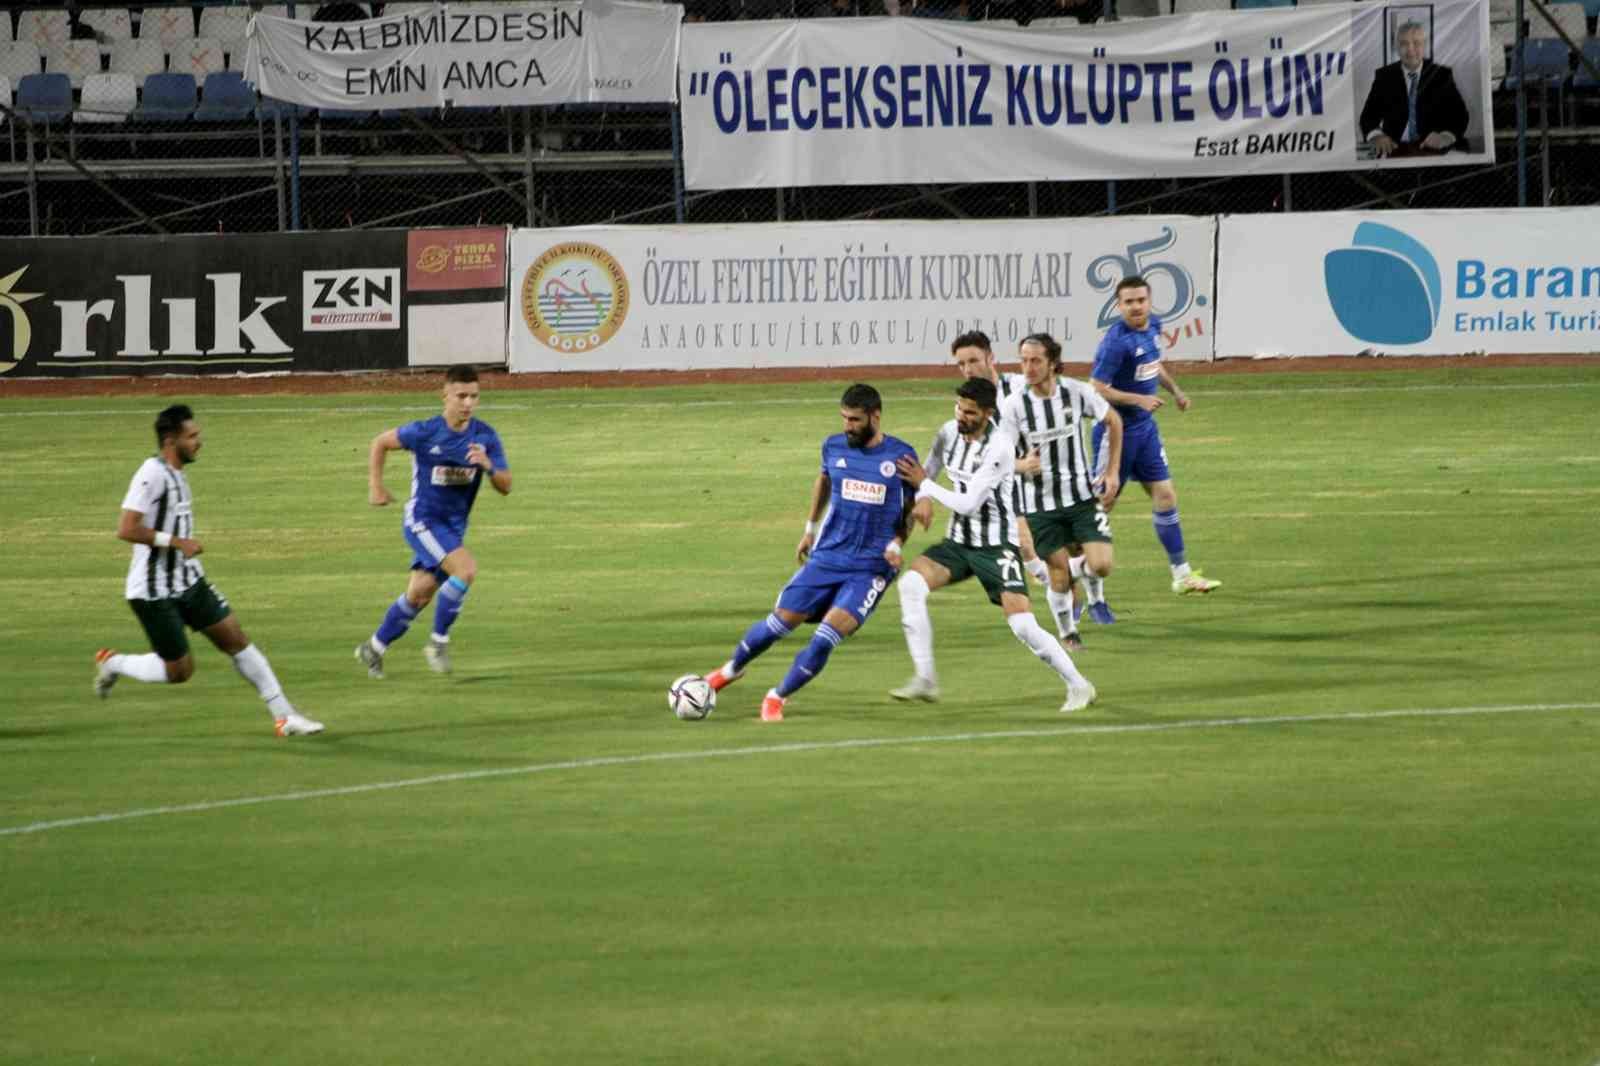 3.lig 3. Grup Fethiyespor 2 - Büyüçekmece Tepecikspor 1 #mugla